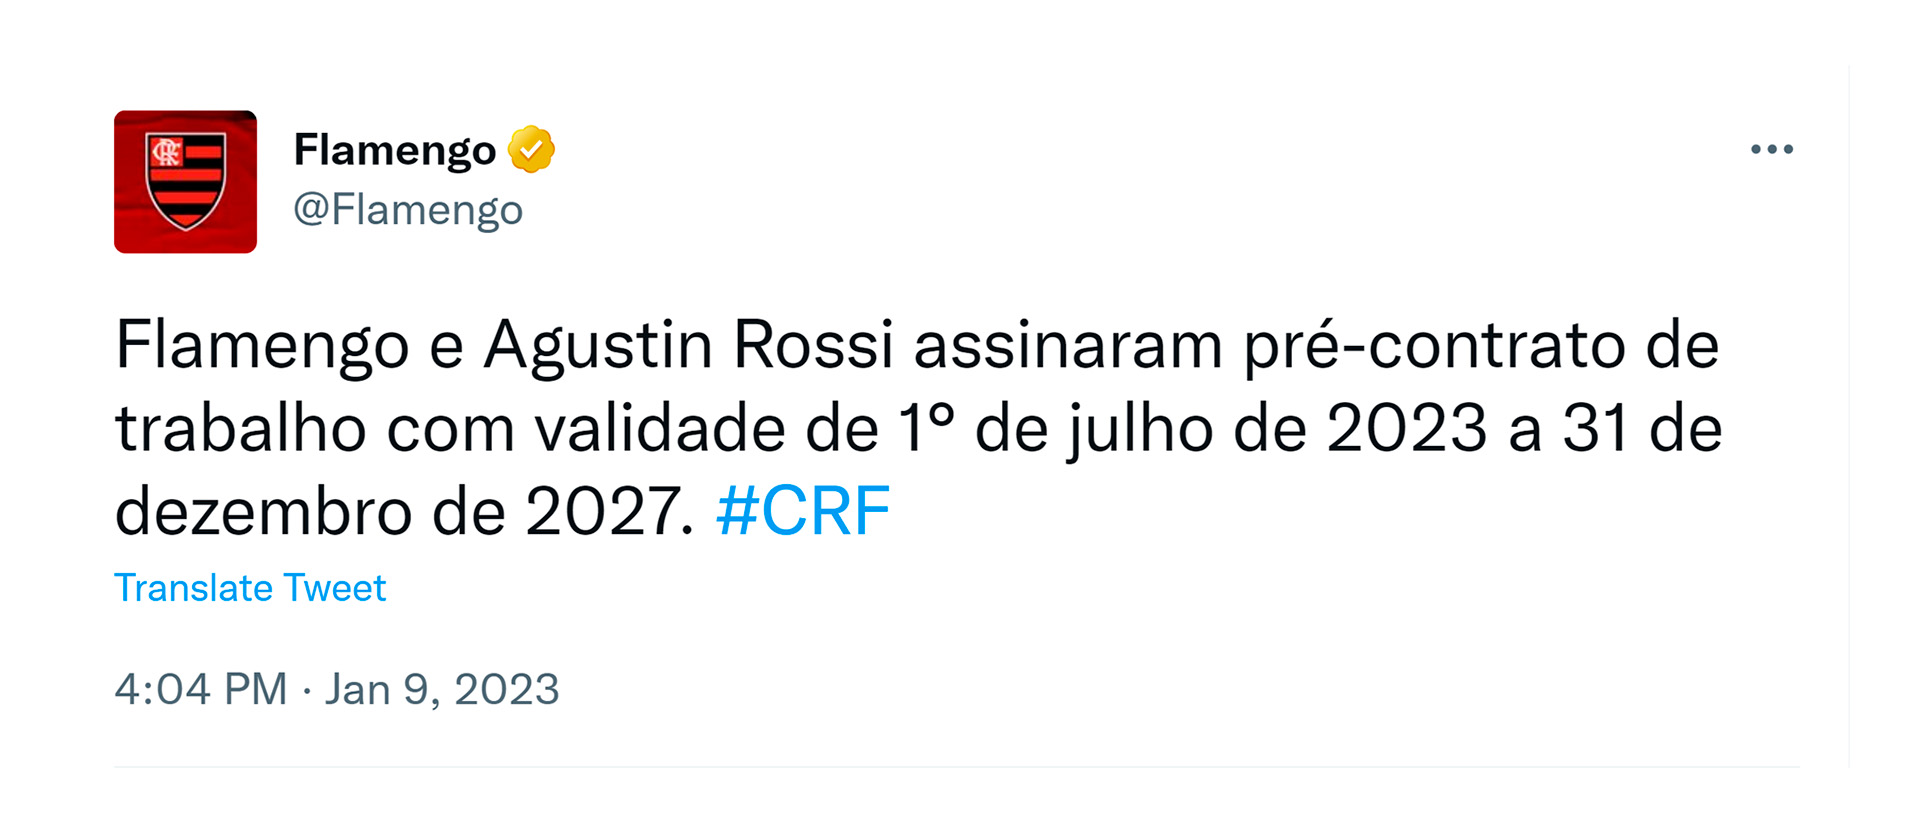 Con un breve tweet, Flamengo confirmó el acuerdo con Agustín Rossi